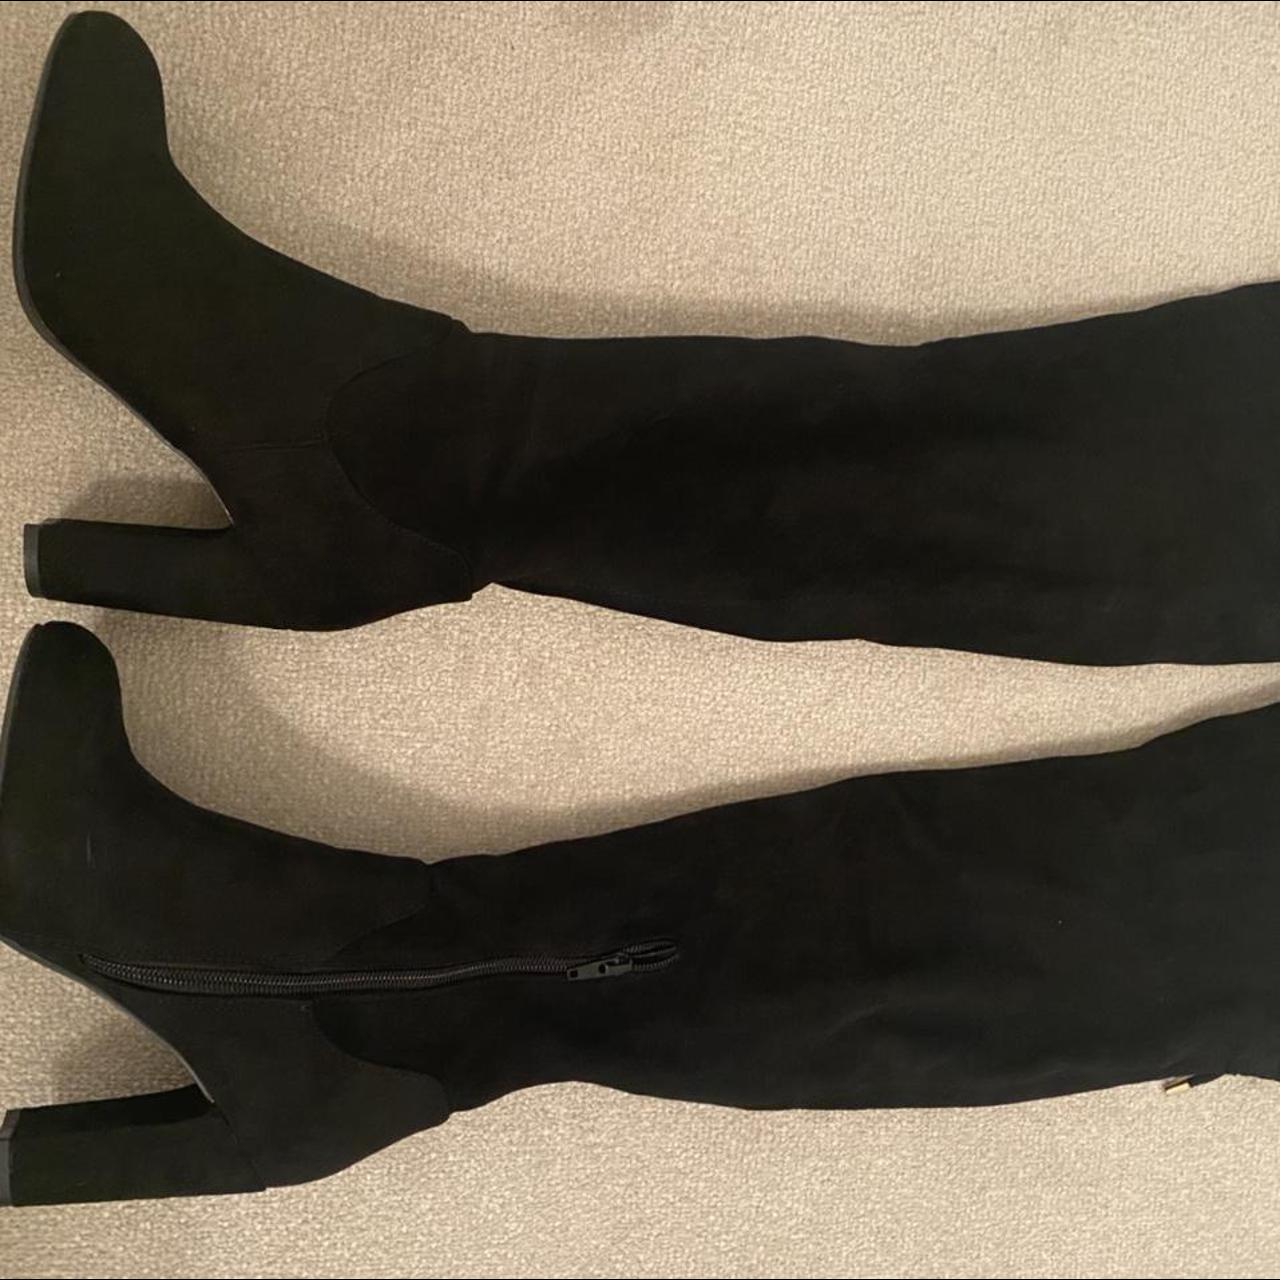 Carvela PACE black suedette high leg boots. Size 3.... - Depop